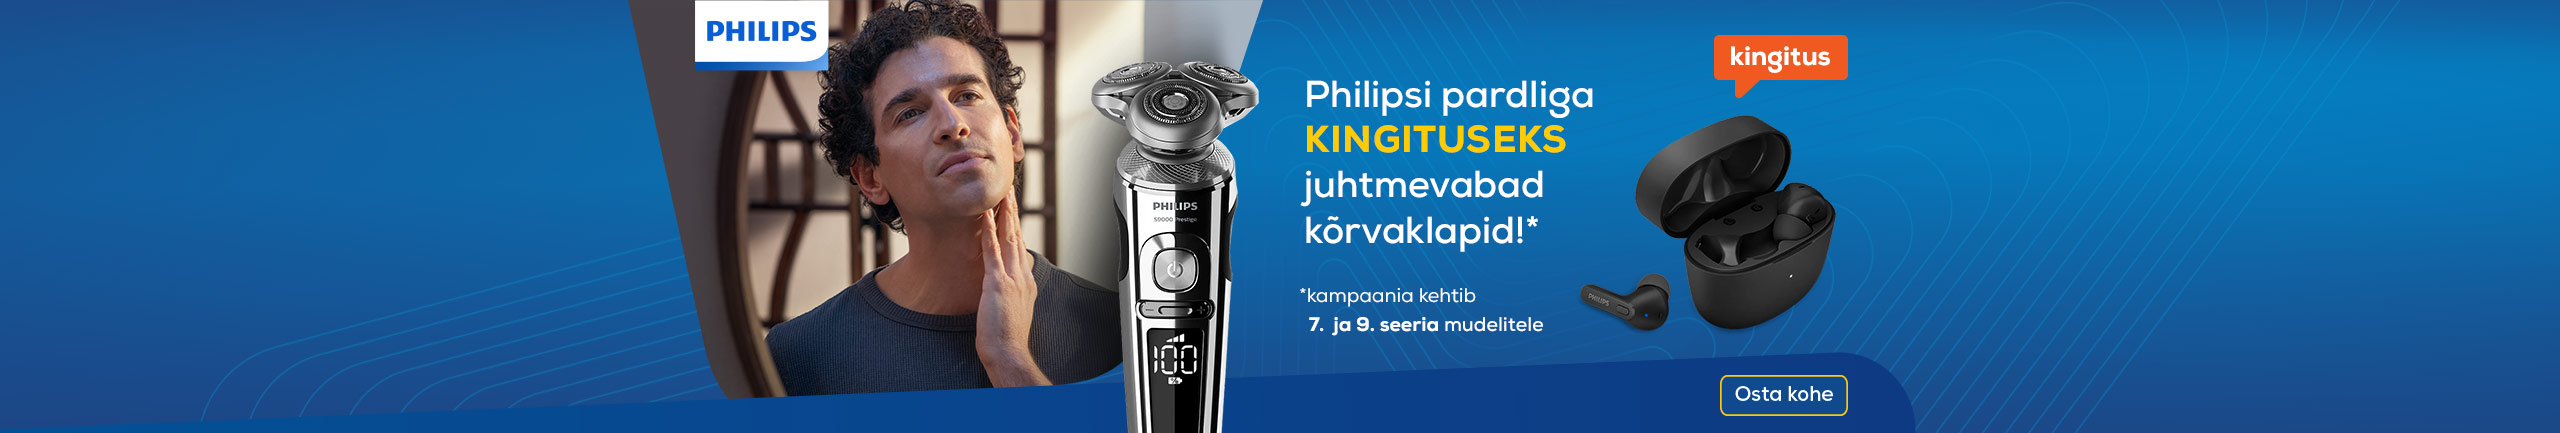 Philipsi pardliga kingituseks juhtmevabad kõrvaklapid!